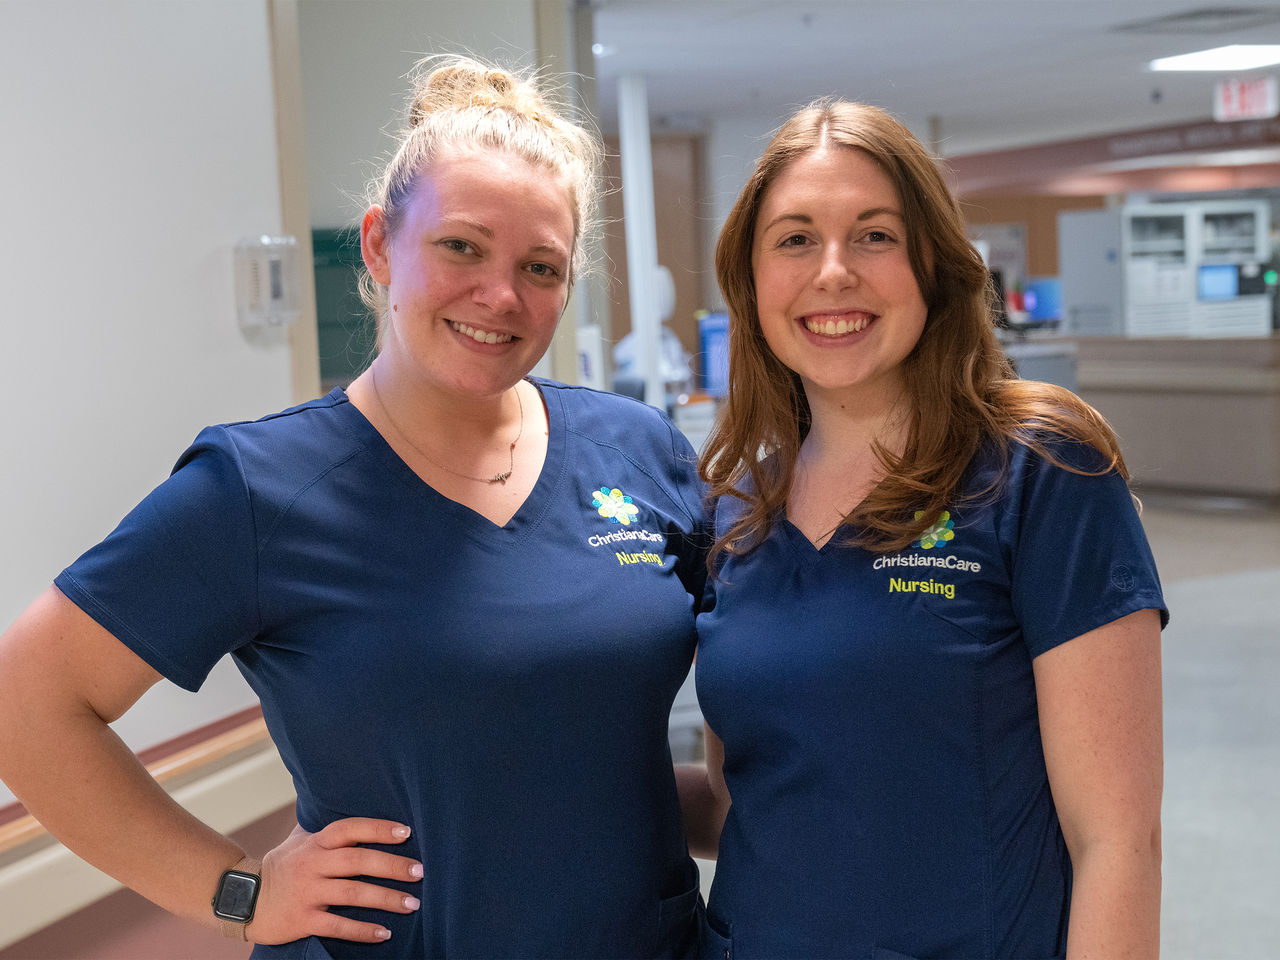 Two female ChristianaCare nurses smiling